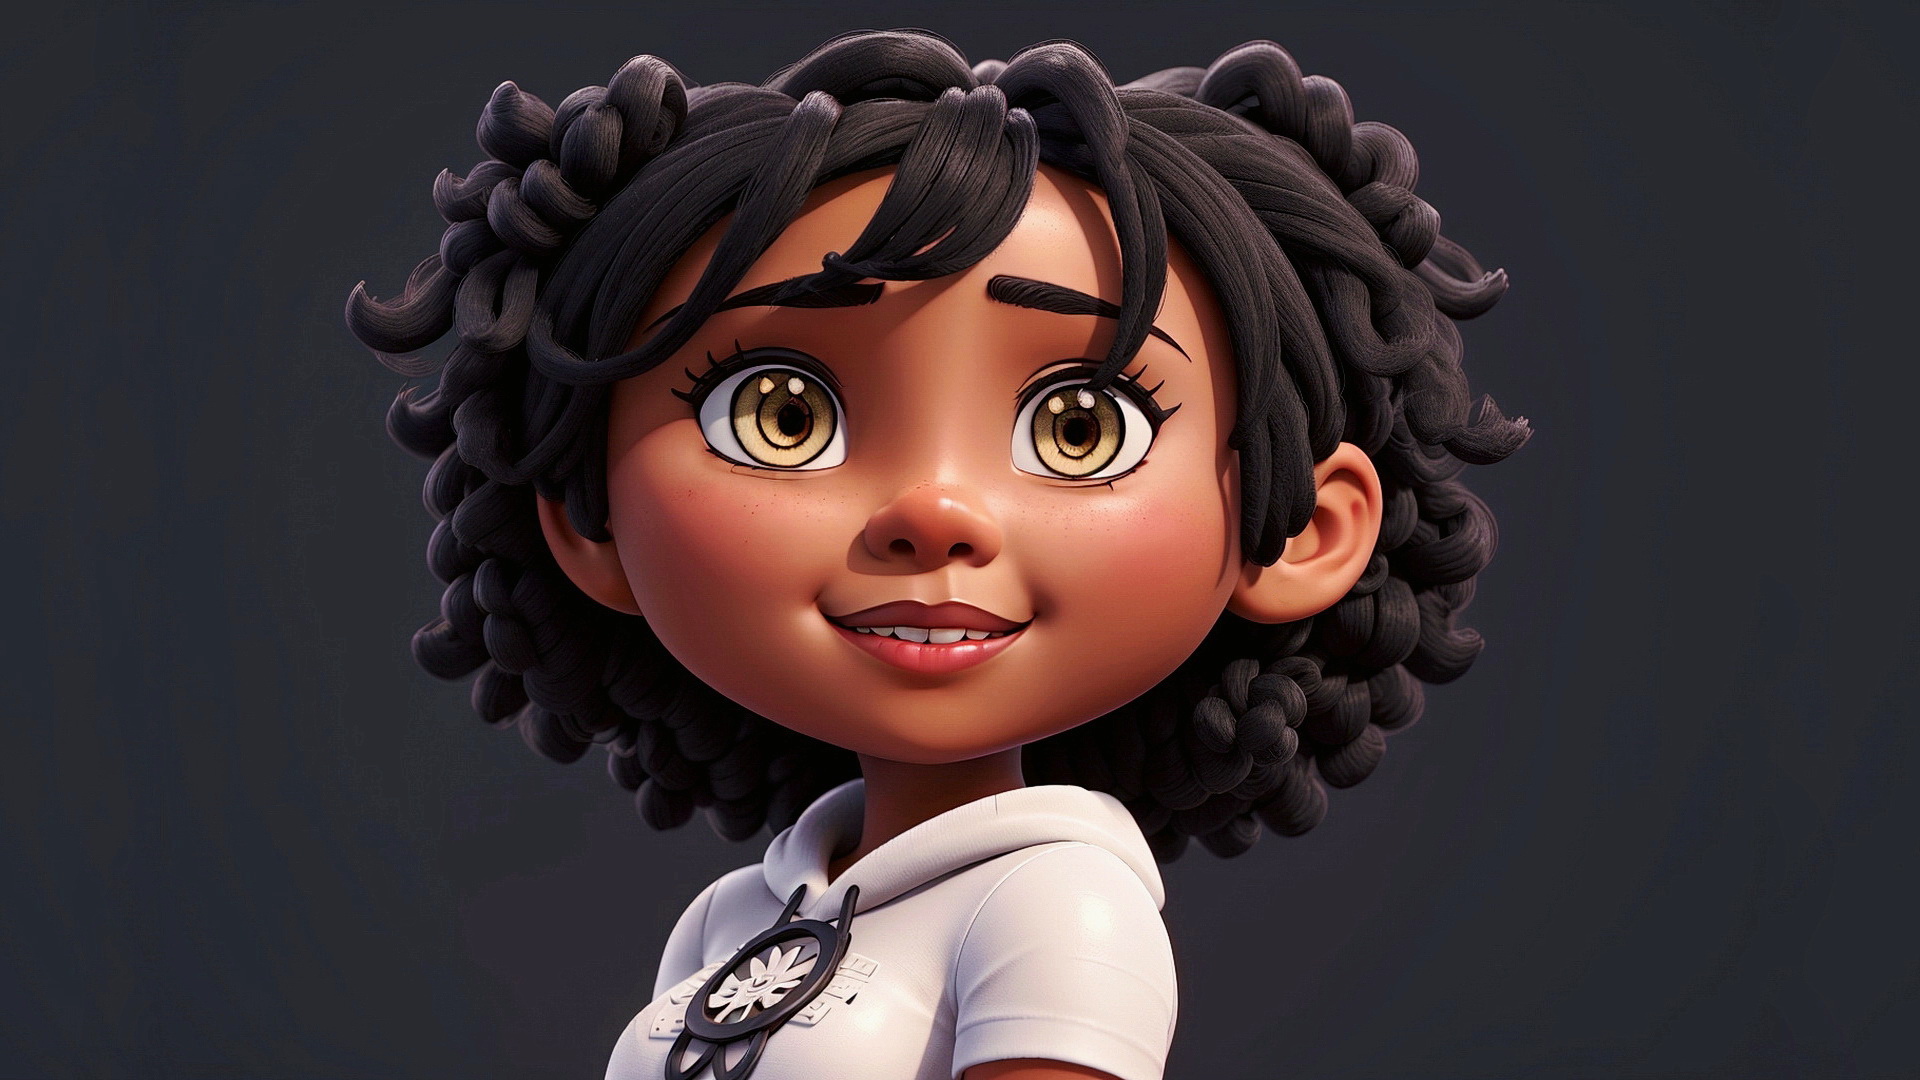 Бесплатное фото Портрет чернокожей девушки с большой головой на сером фоне